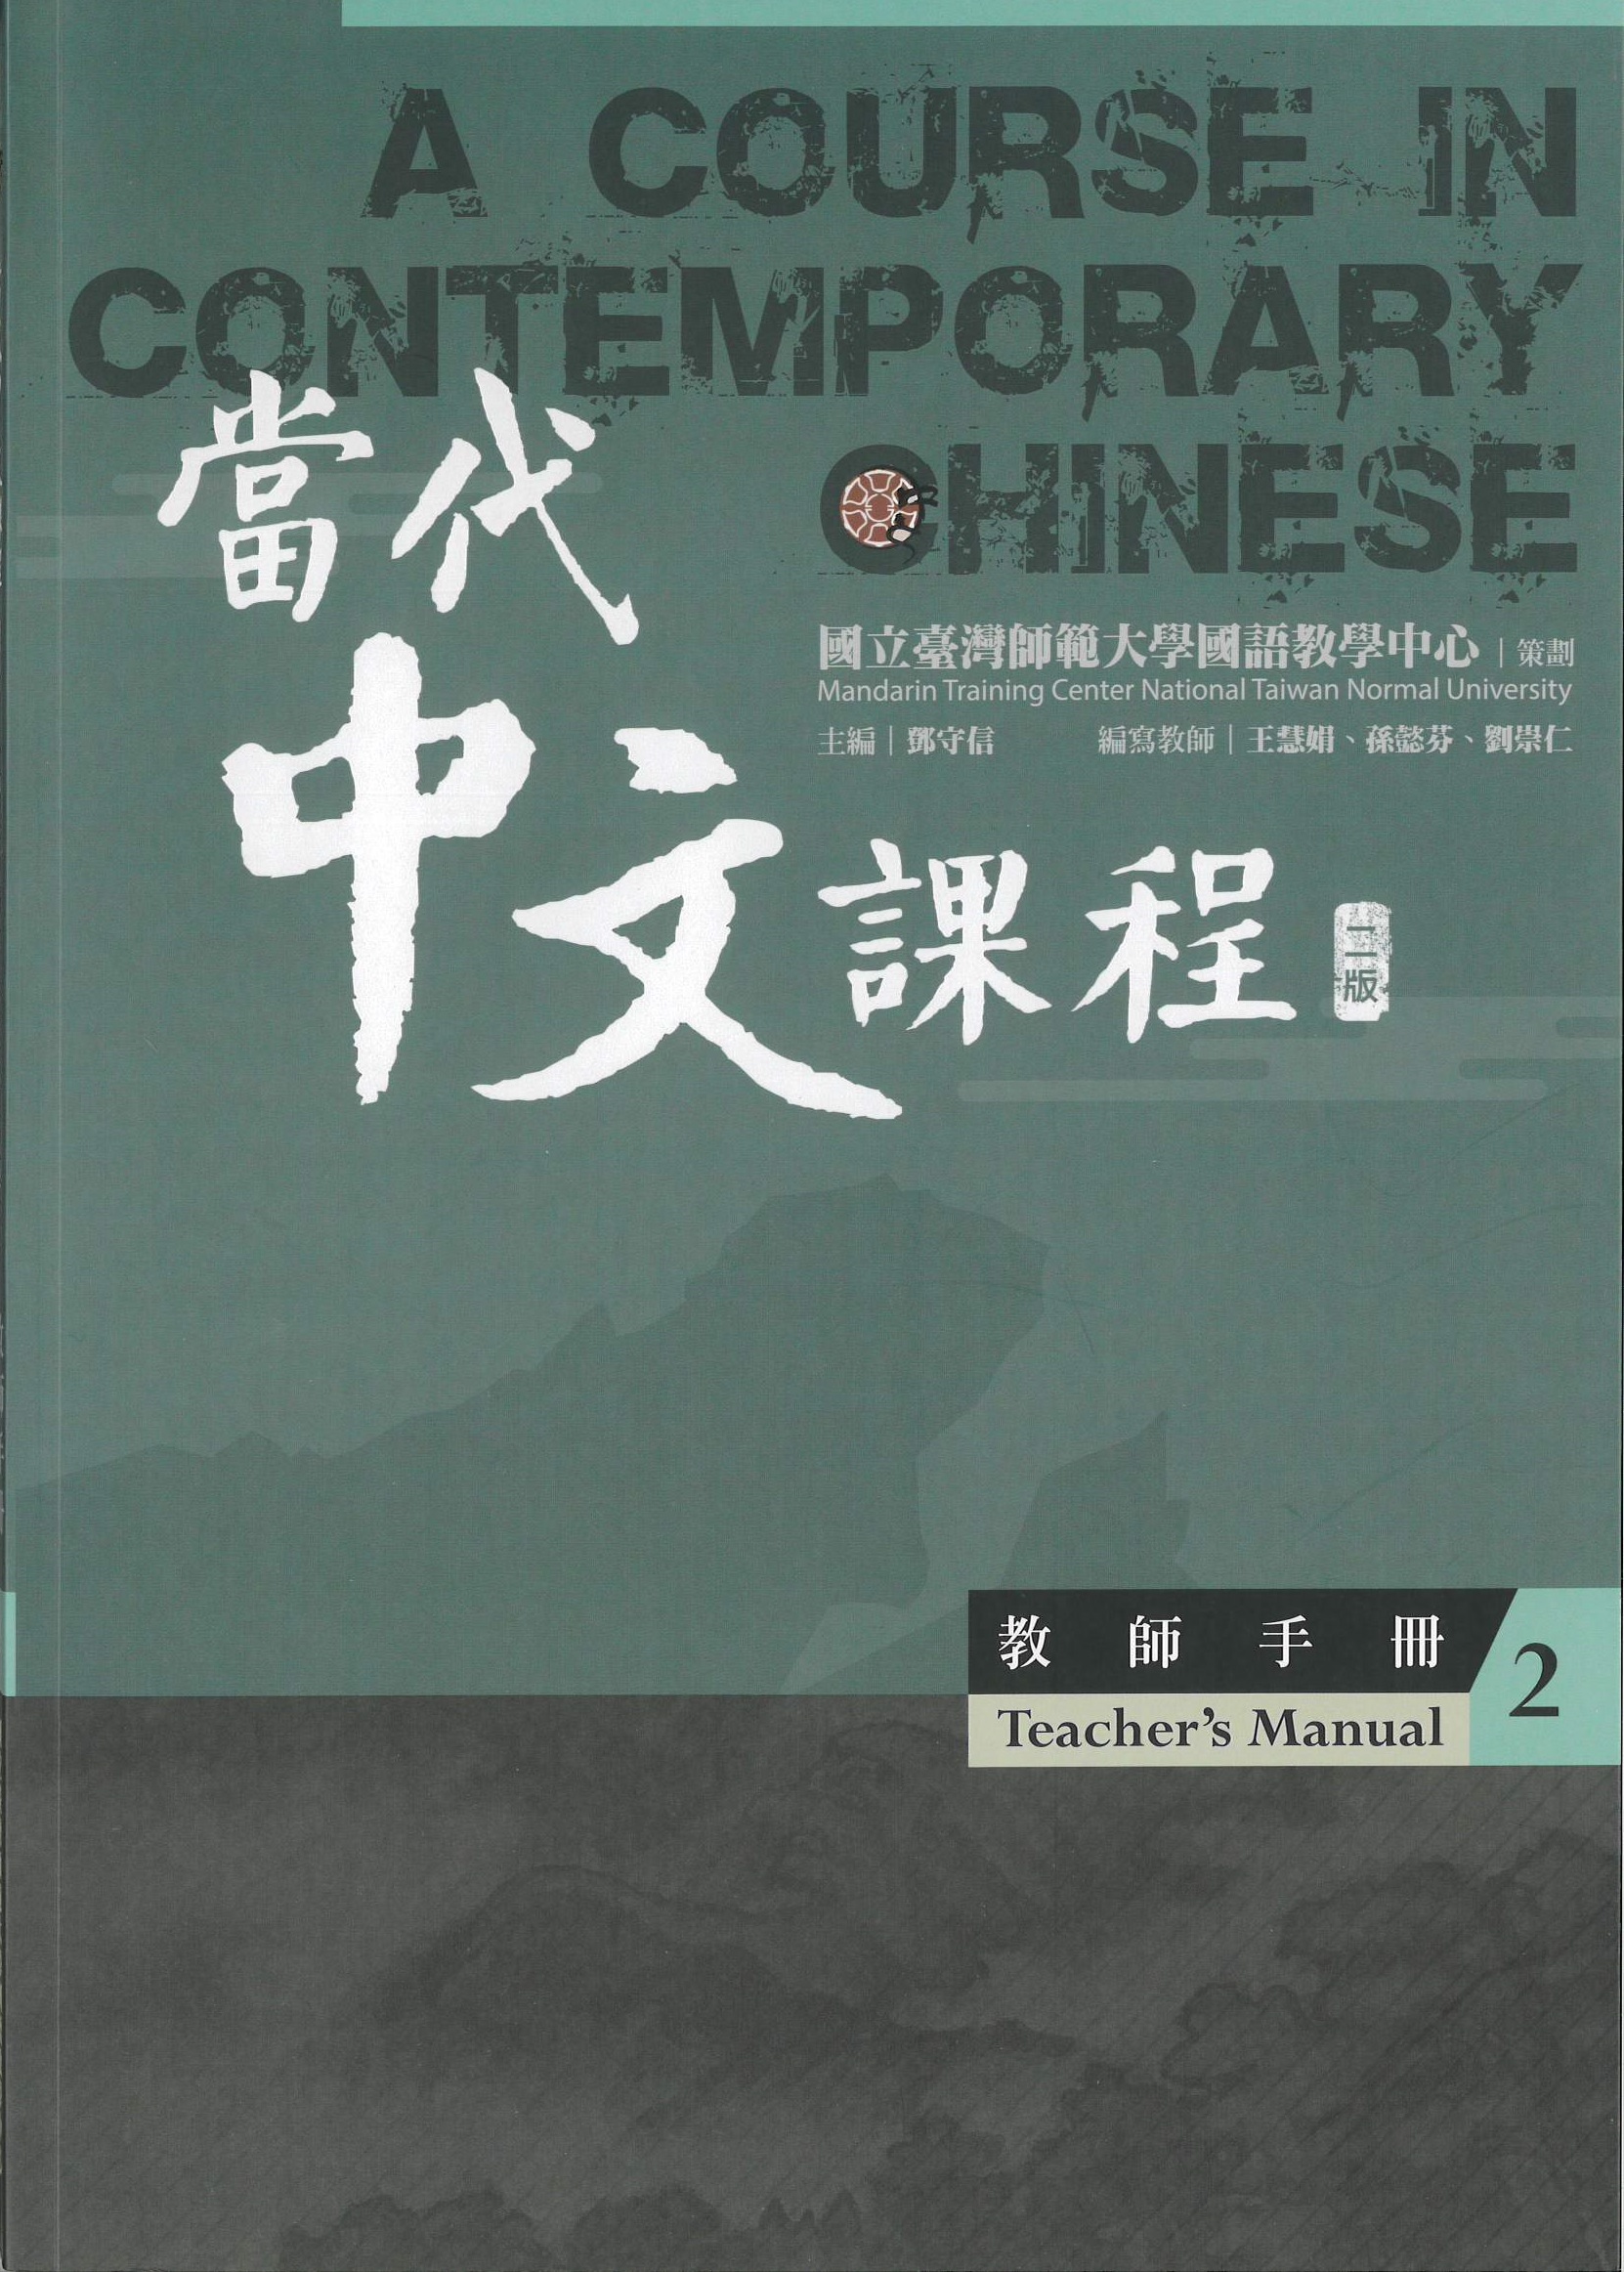 當代中文課程.二版 : 教師手冊(2) = A course in contemporary Chinese : teacher